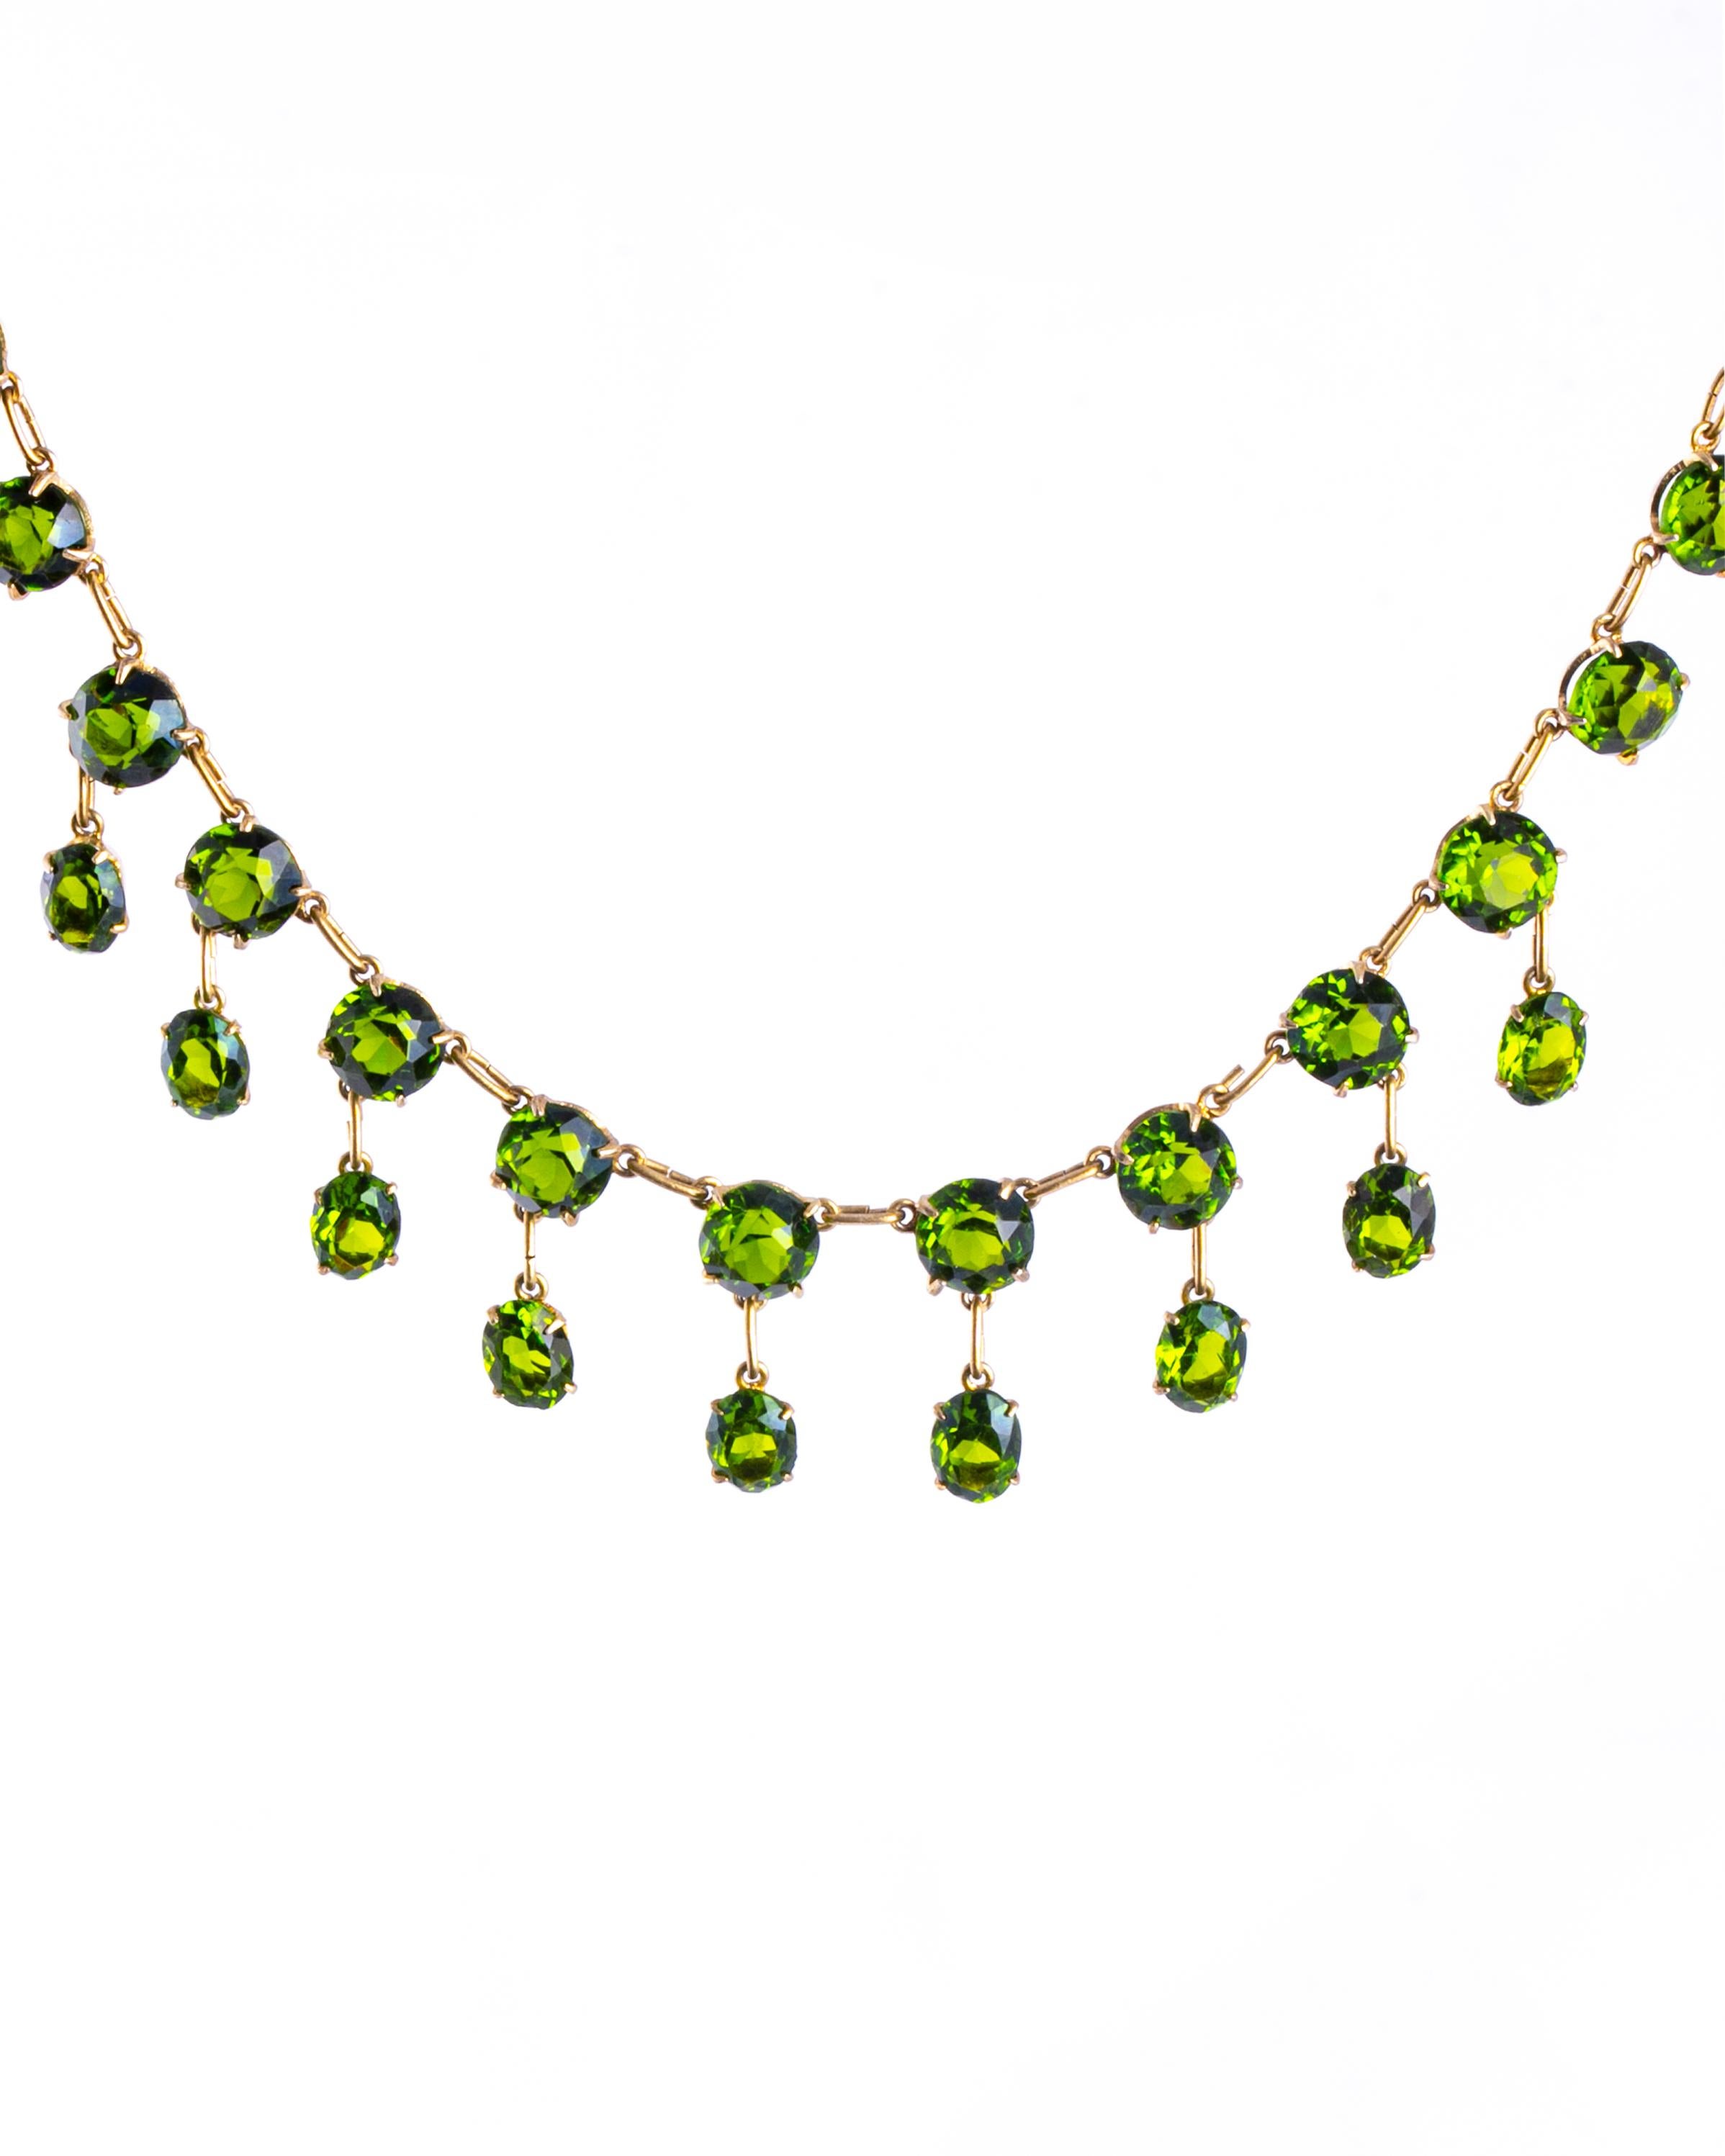 Die grünen Steine in dieser Halskette sind hell und funkeln. Sie sind in schlichte Krallenfassungen gefasst und mit einer zarten Kette verbunden, die in Silbervergoldung modelliert ist. 

Länge: 37cm
Fransenlänge: 20mm
Stein-Durchmesser: 7.5